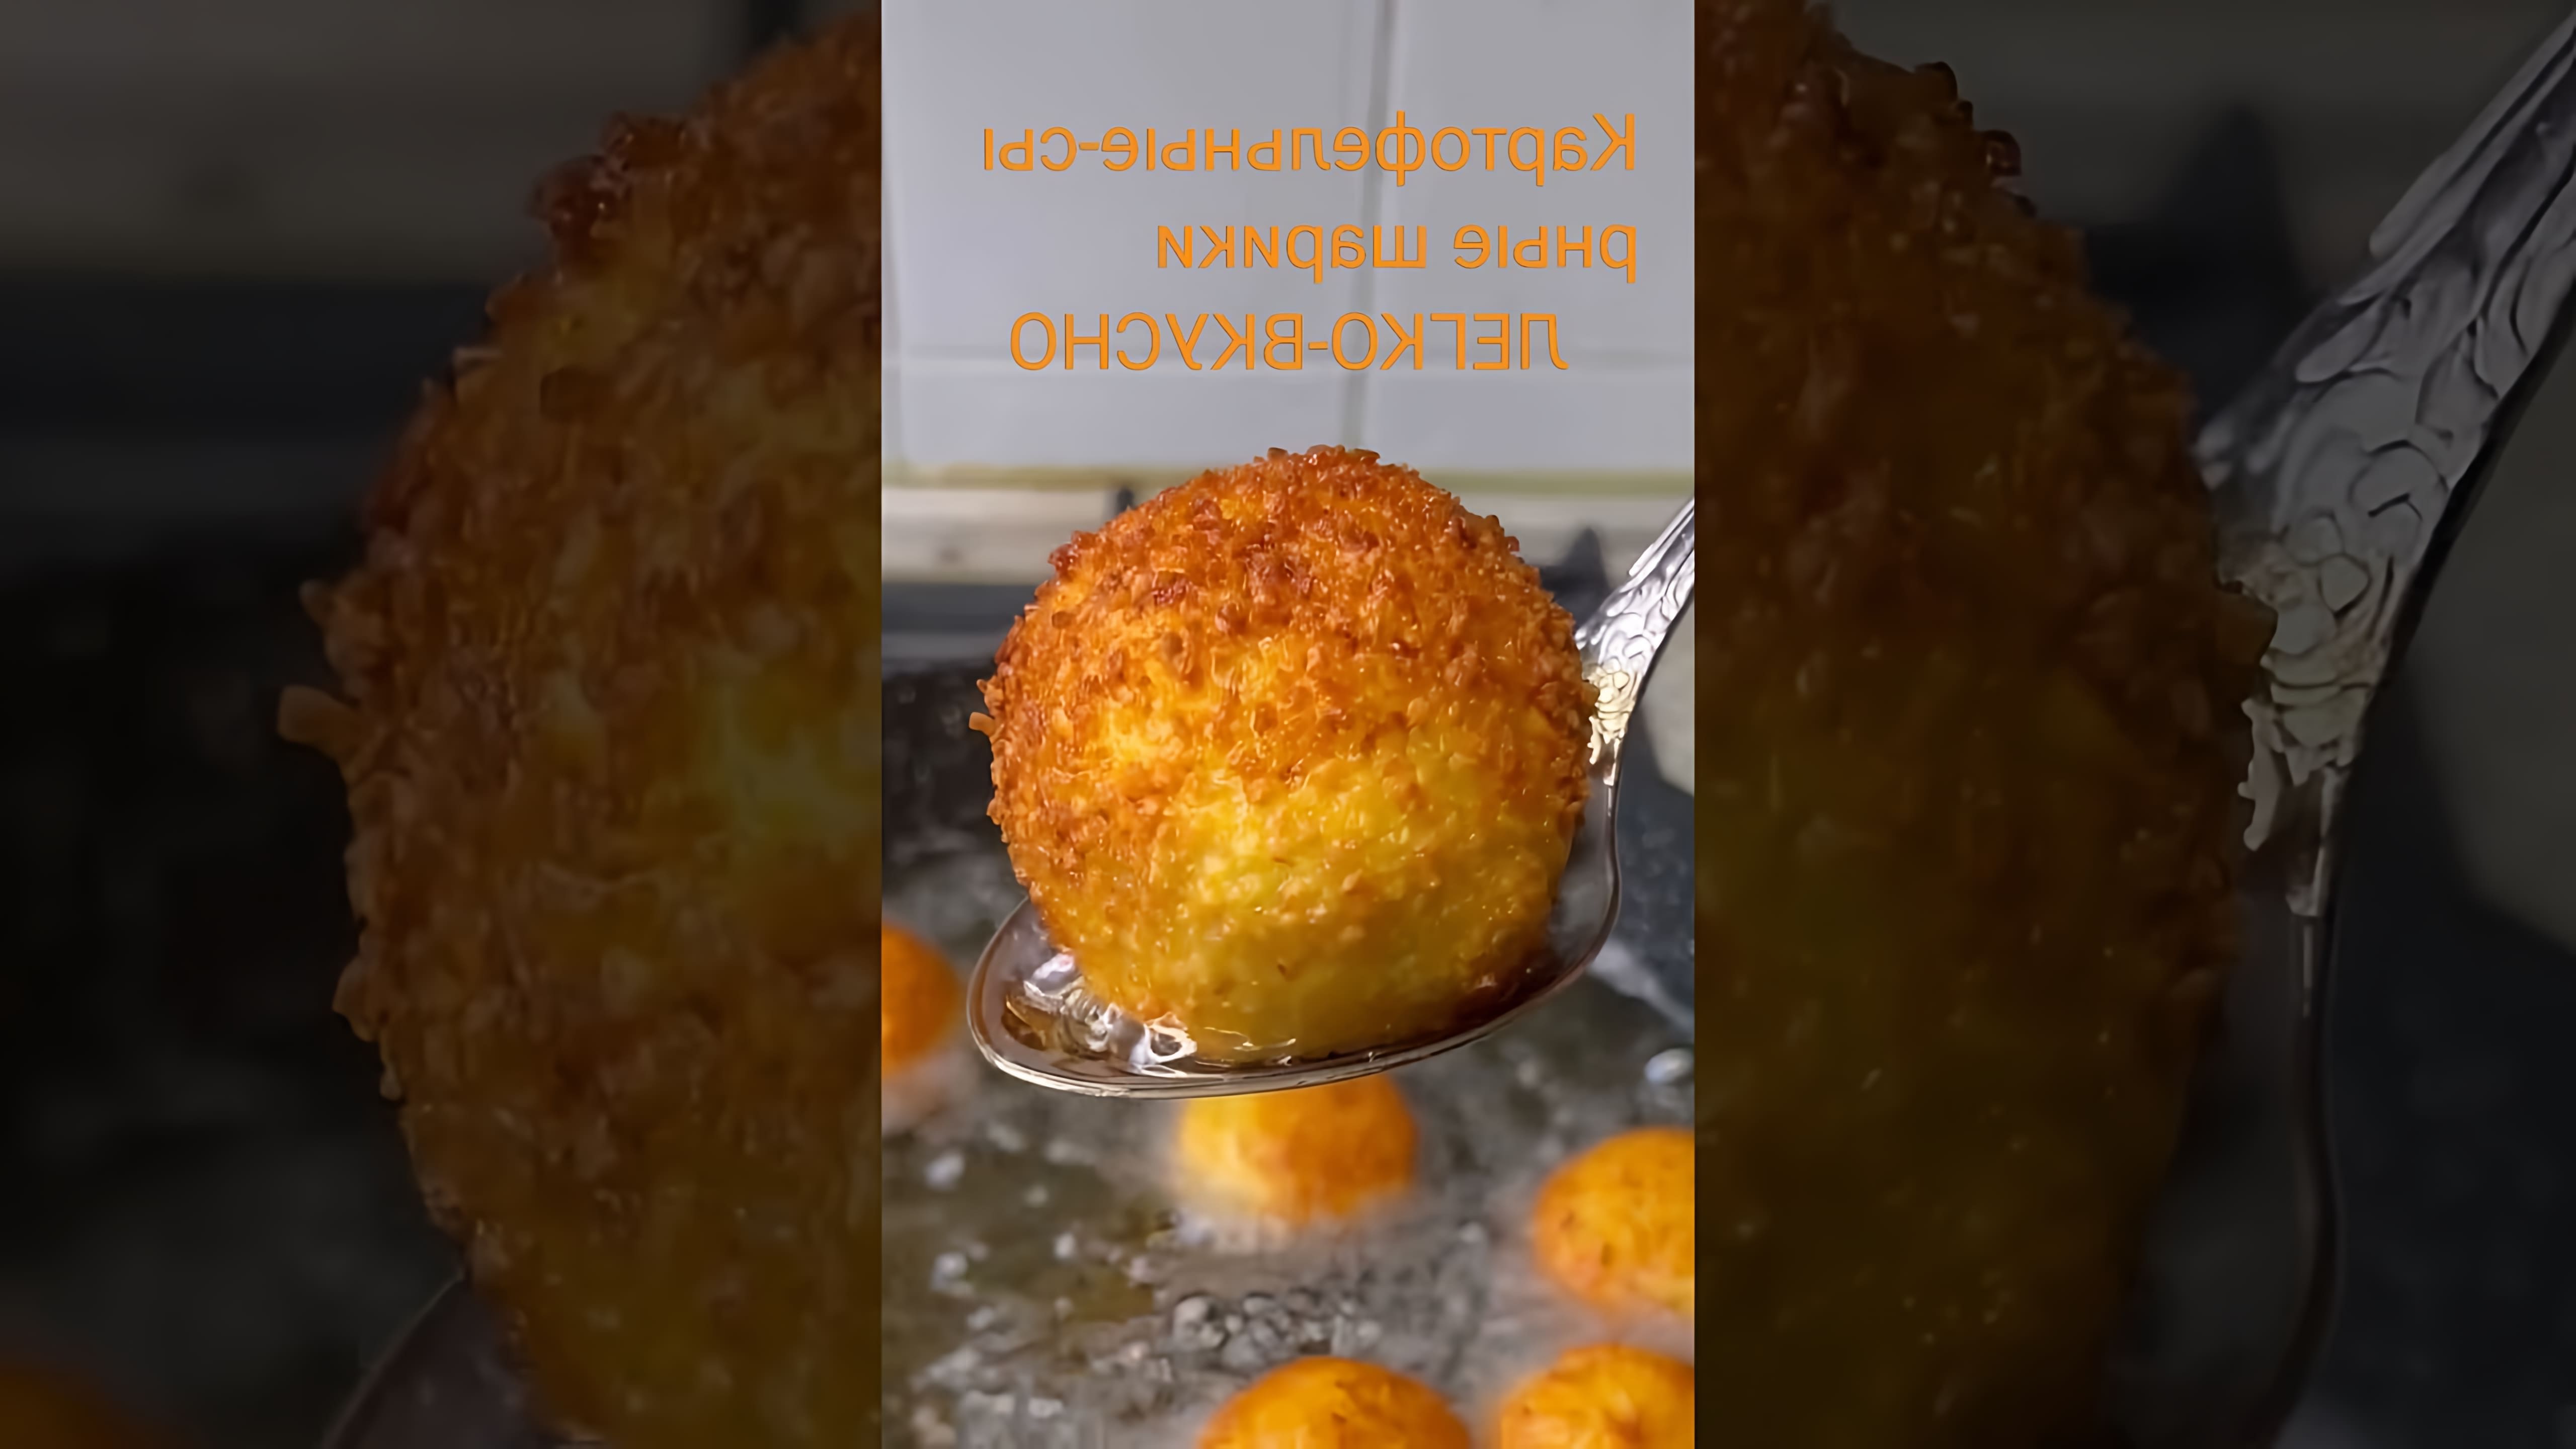 В этом видео демонстрируется рецепт приготовления картофельных-сырных шариков